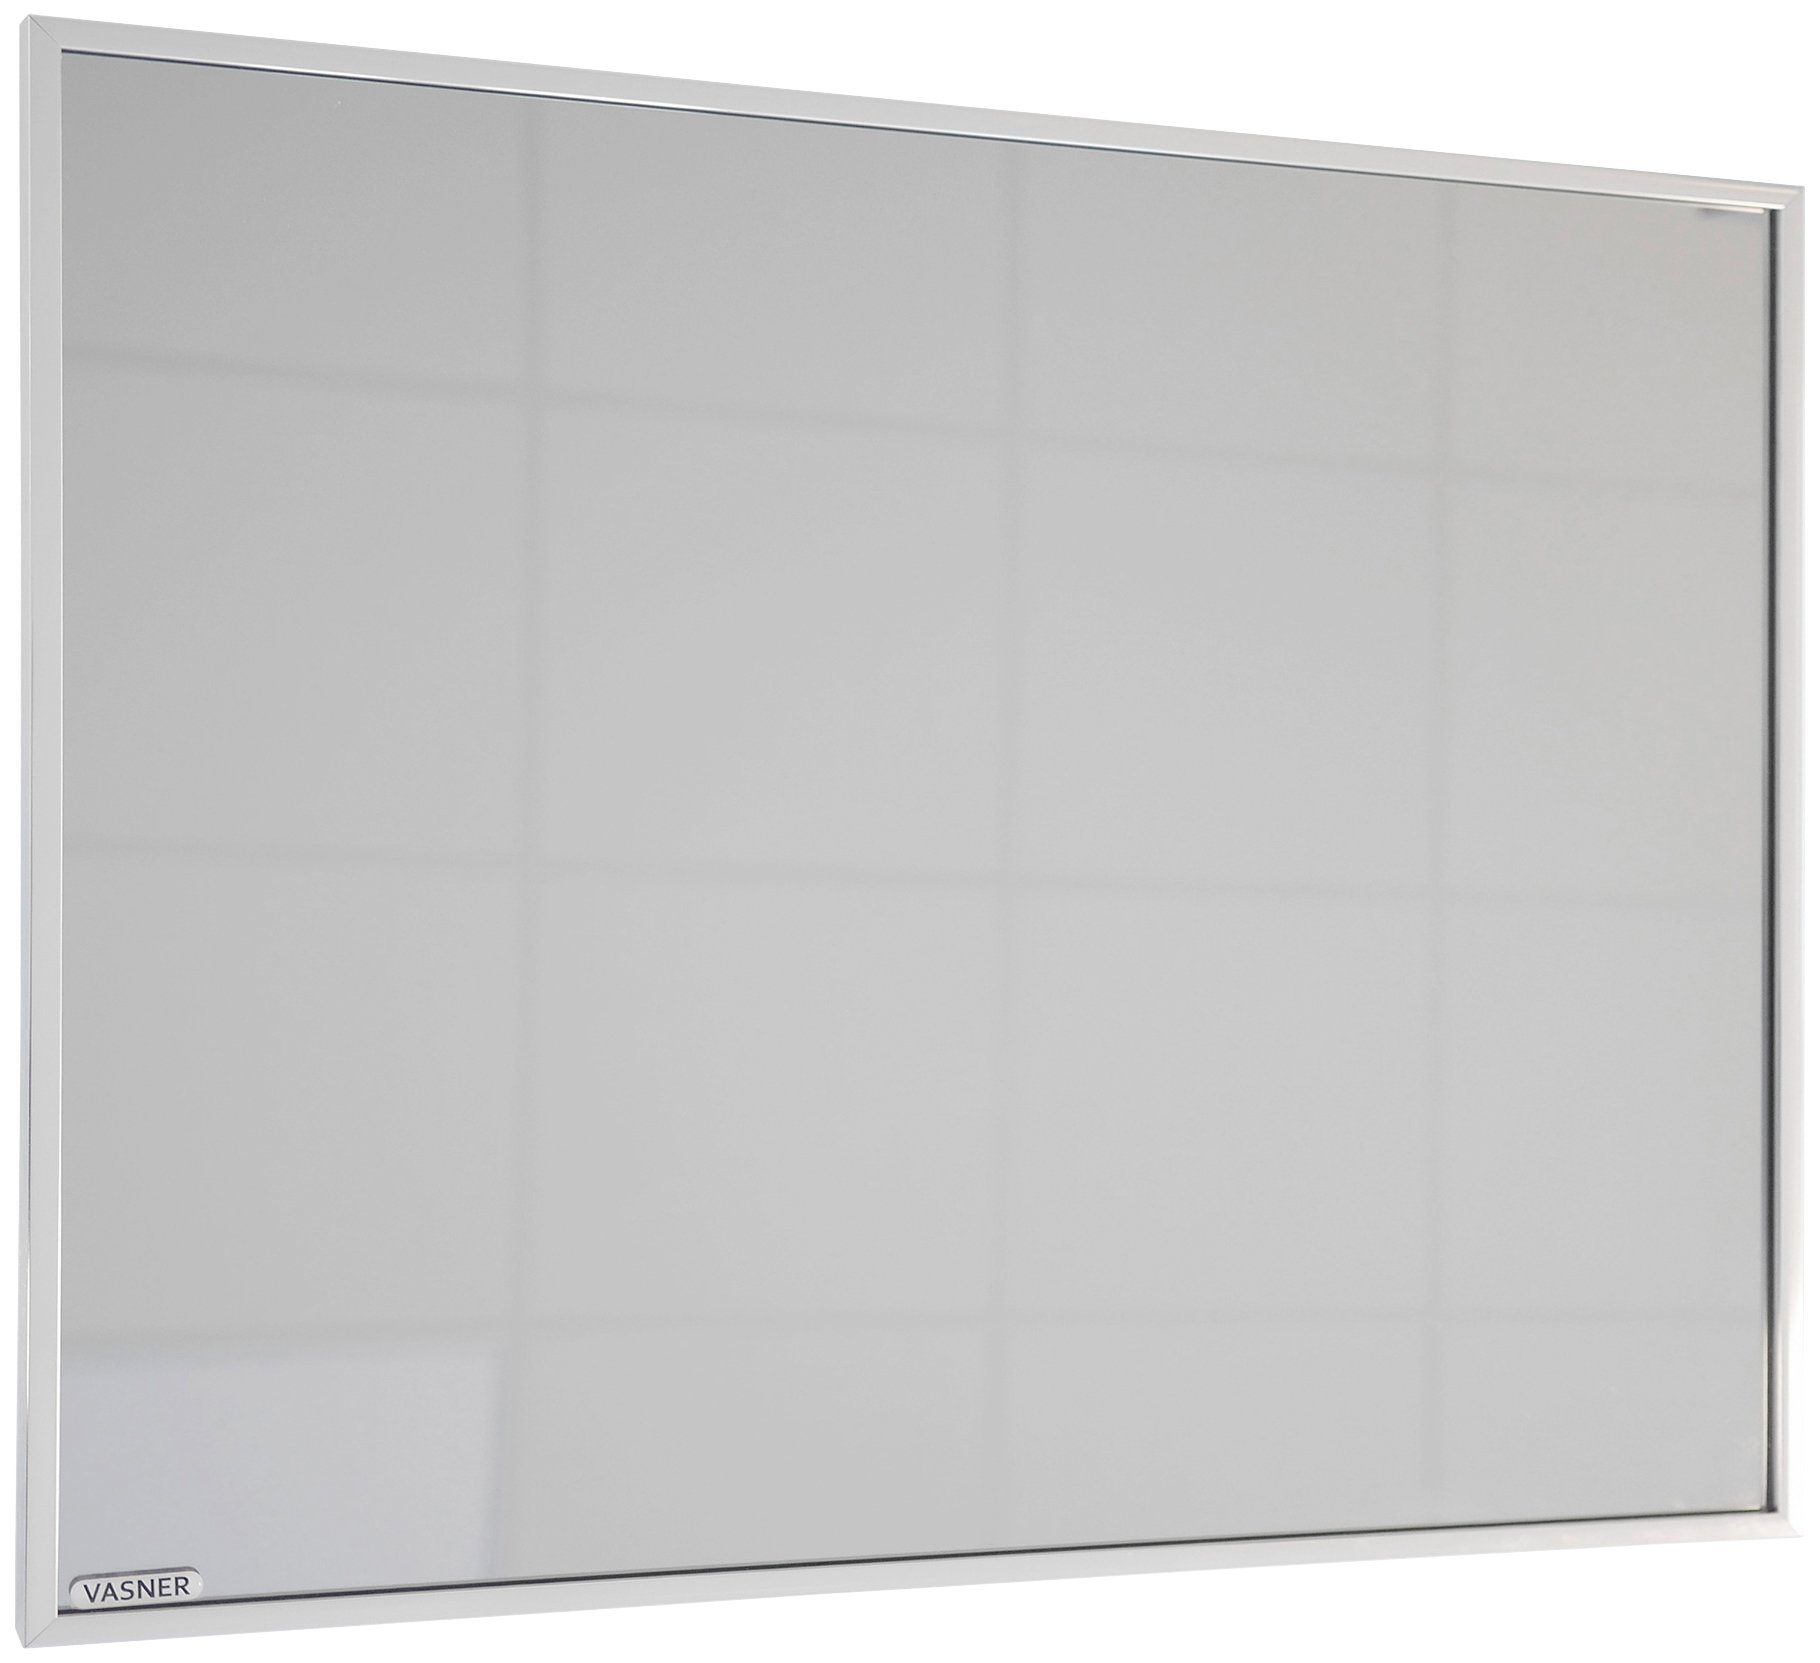 Vasner Infrarotheizung Zipris S 700, 700 W, Spiegelheizung mit Chrom-Rahmen